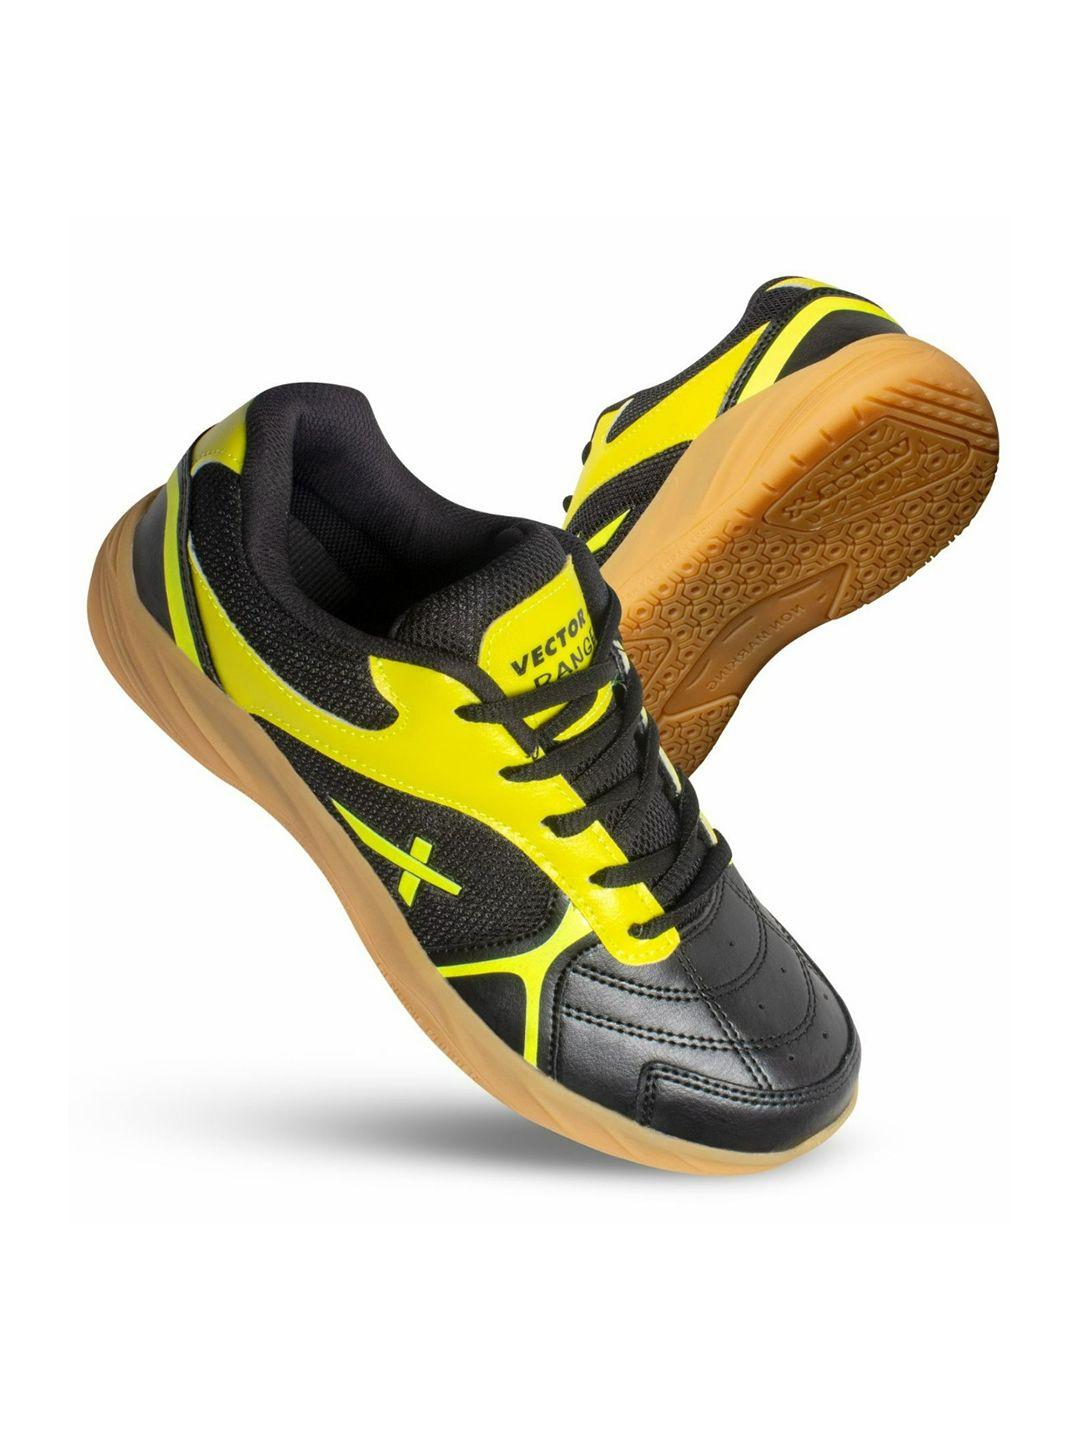 VECTOR X Ranger Absorbs Shock & Slip Resistance Non-Marking Badminton Shoes